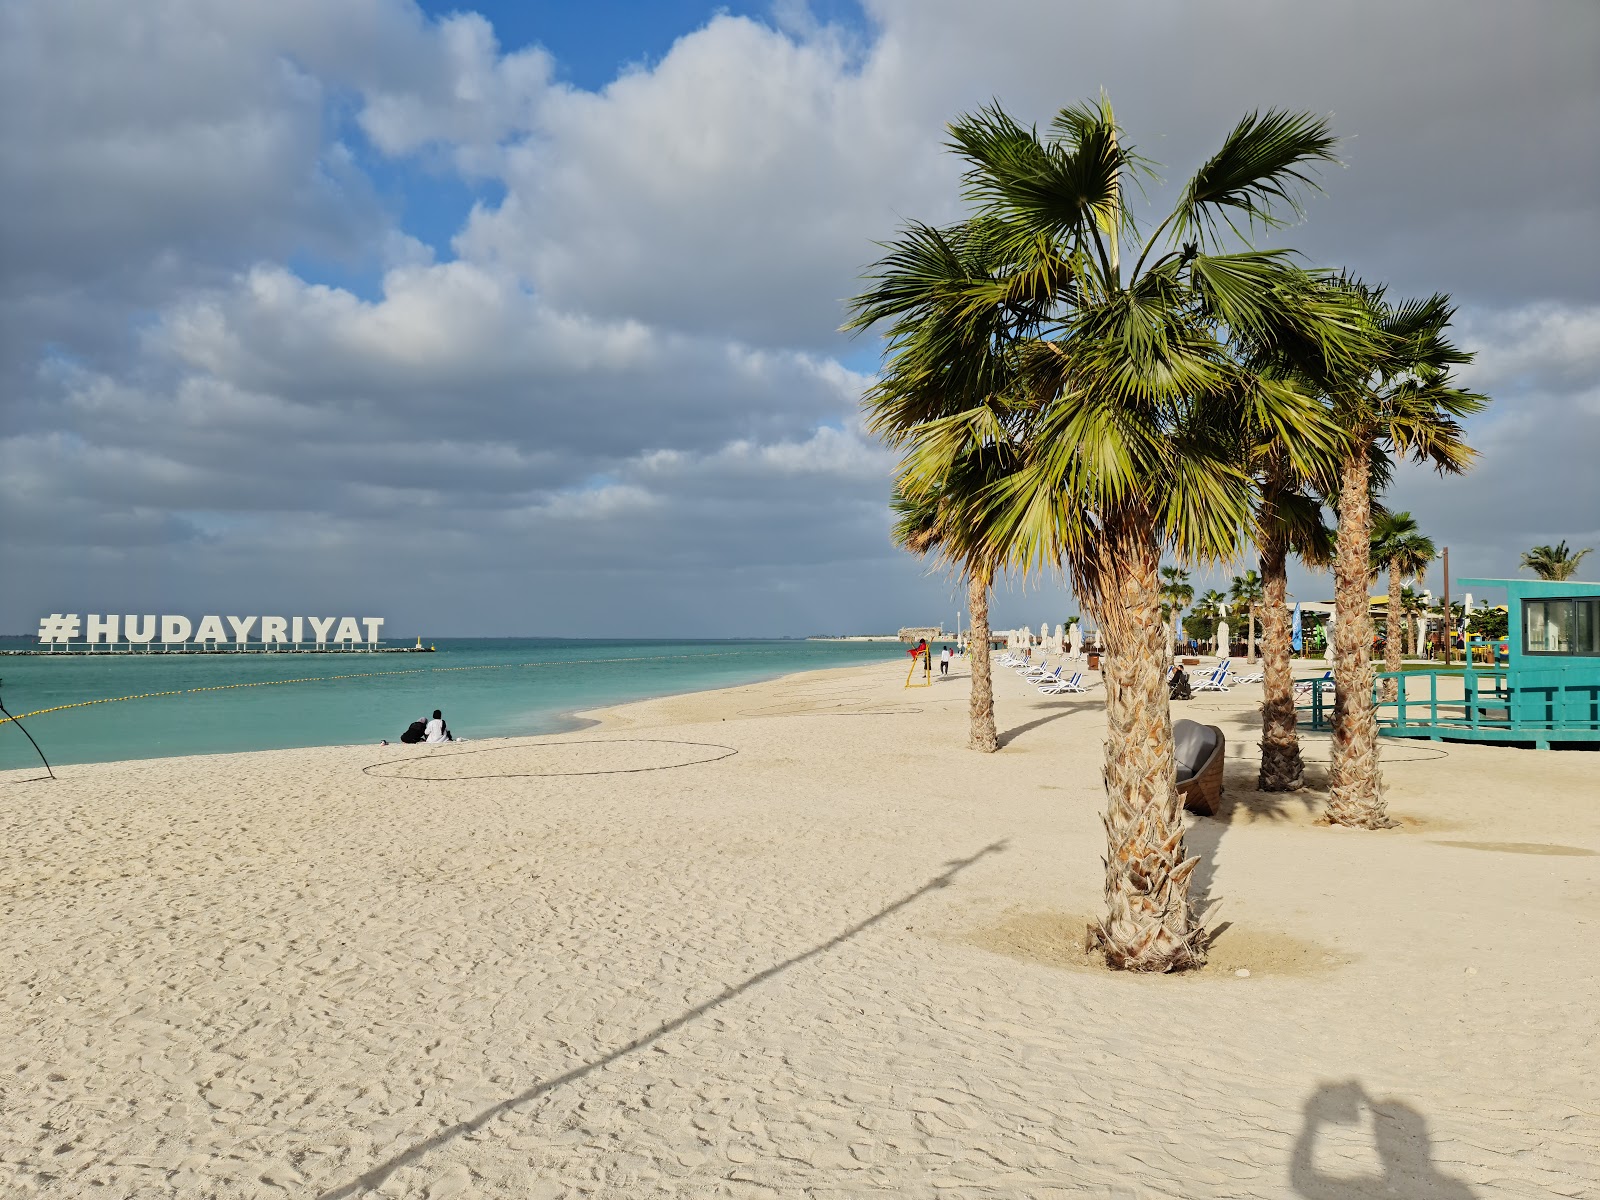 Al Hudayriat Beach'in fotoğrafı beyaz kum yüzey ile